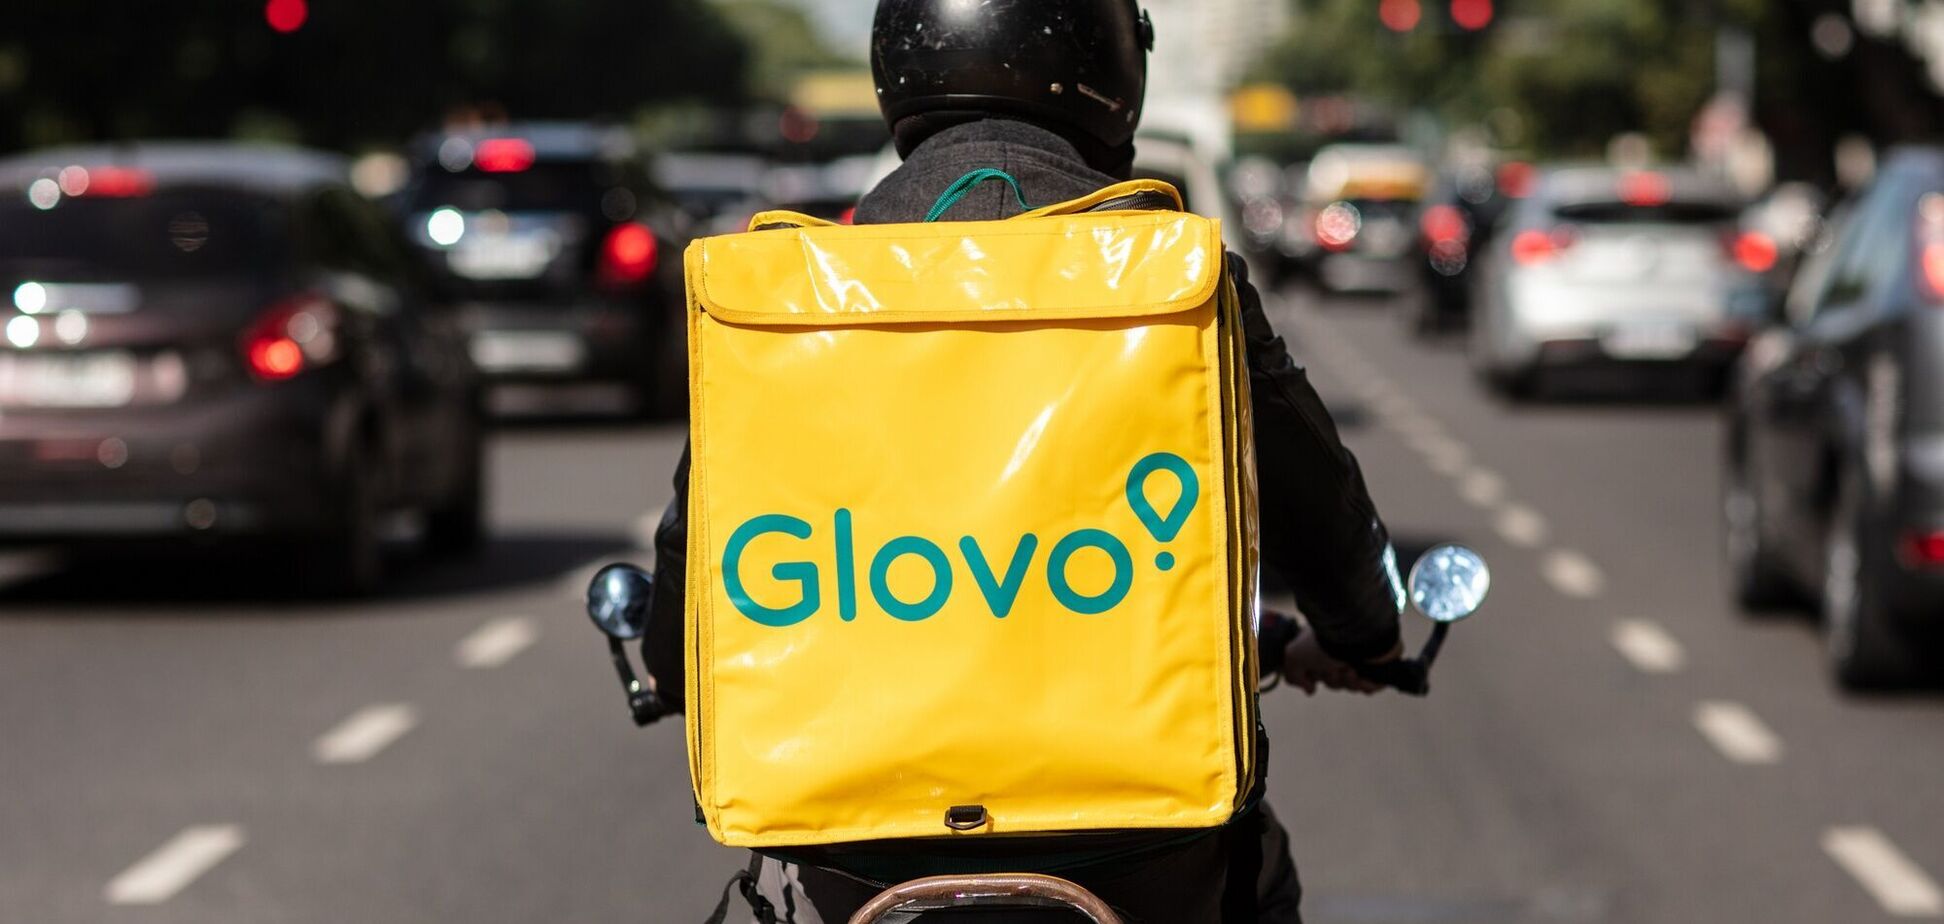 Glovo звинуватили в крадіжці хакерами даних мільйонів клієнтів: у компанії інформацію спростували